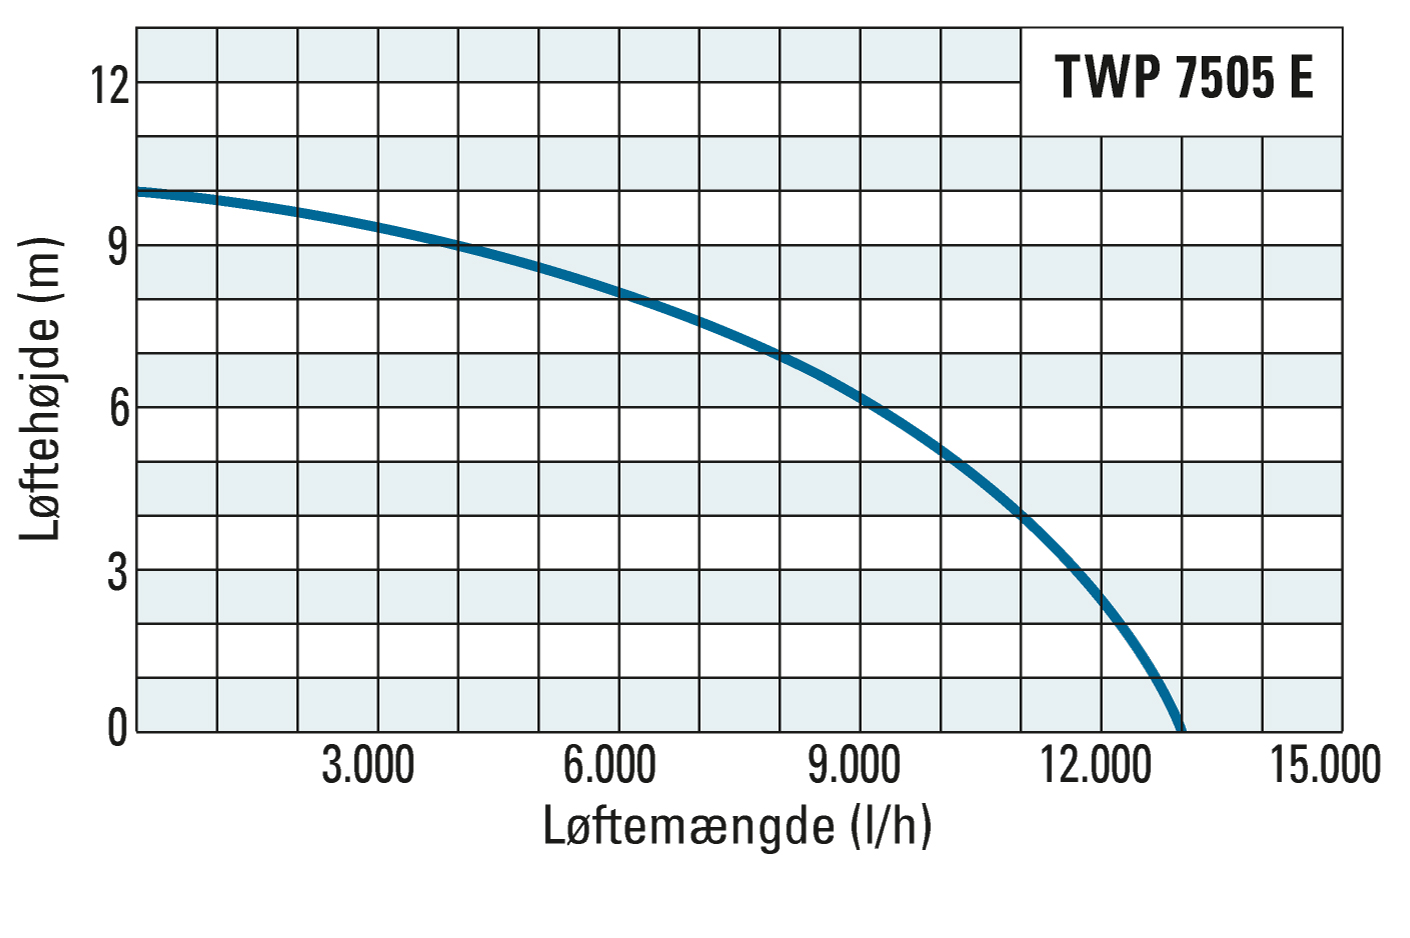 transporthøjde og transportmængde for TWP 7505 E